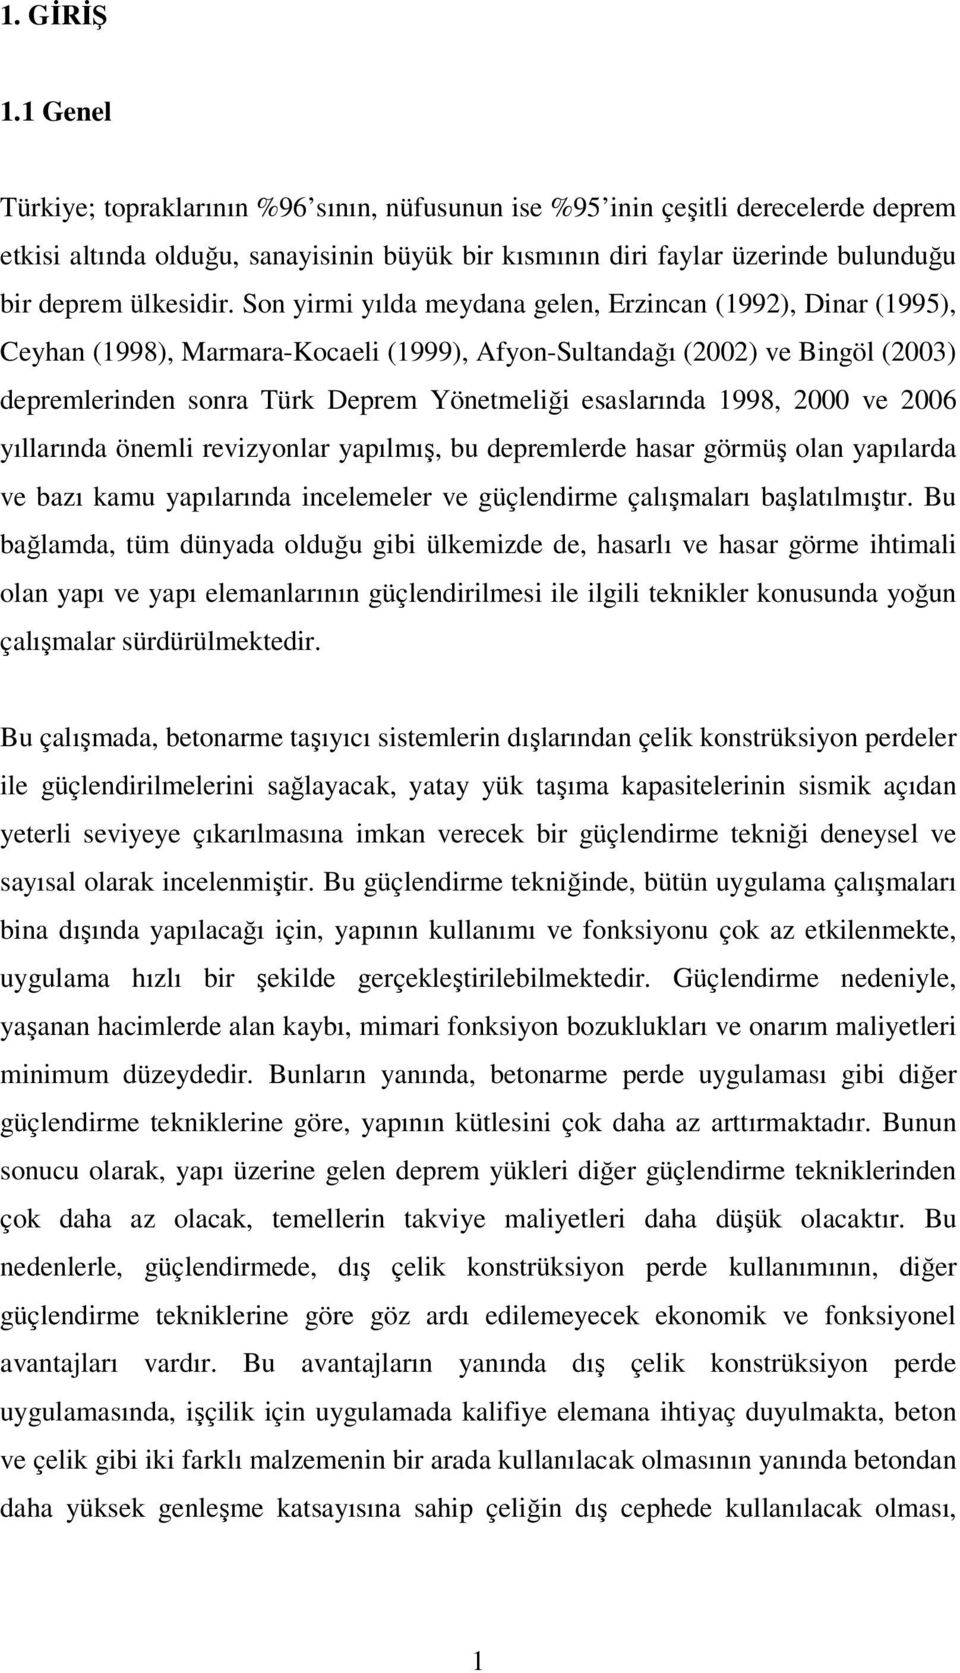 Son yirmi yılda meydana gelen, Erzincan (1992), Dinar (1995), Ceyhan (1998), Marmara-Kocaeli (1999), Afyon-Sultandağı (2002) ve Bingöl (2003) depremlerinden sonra Türk Deprem Yönetmeliği esaslarında